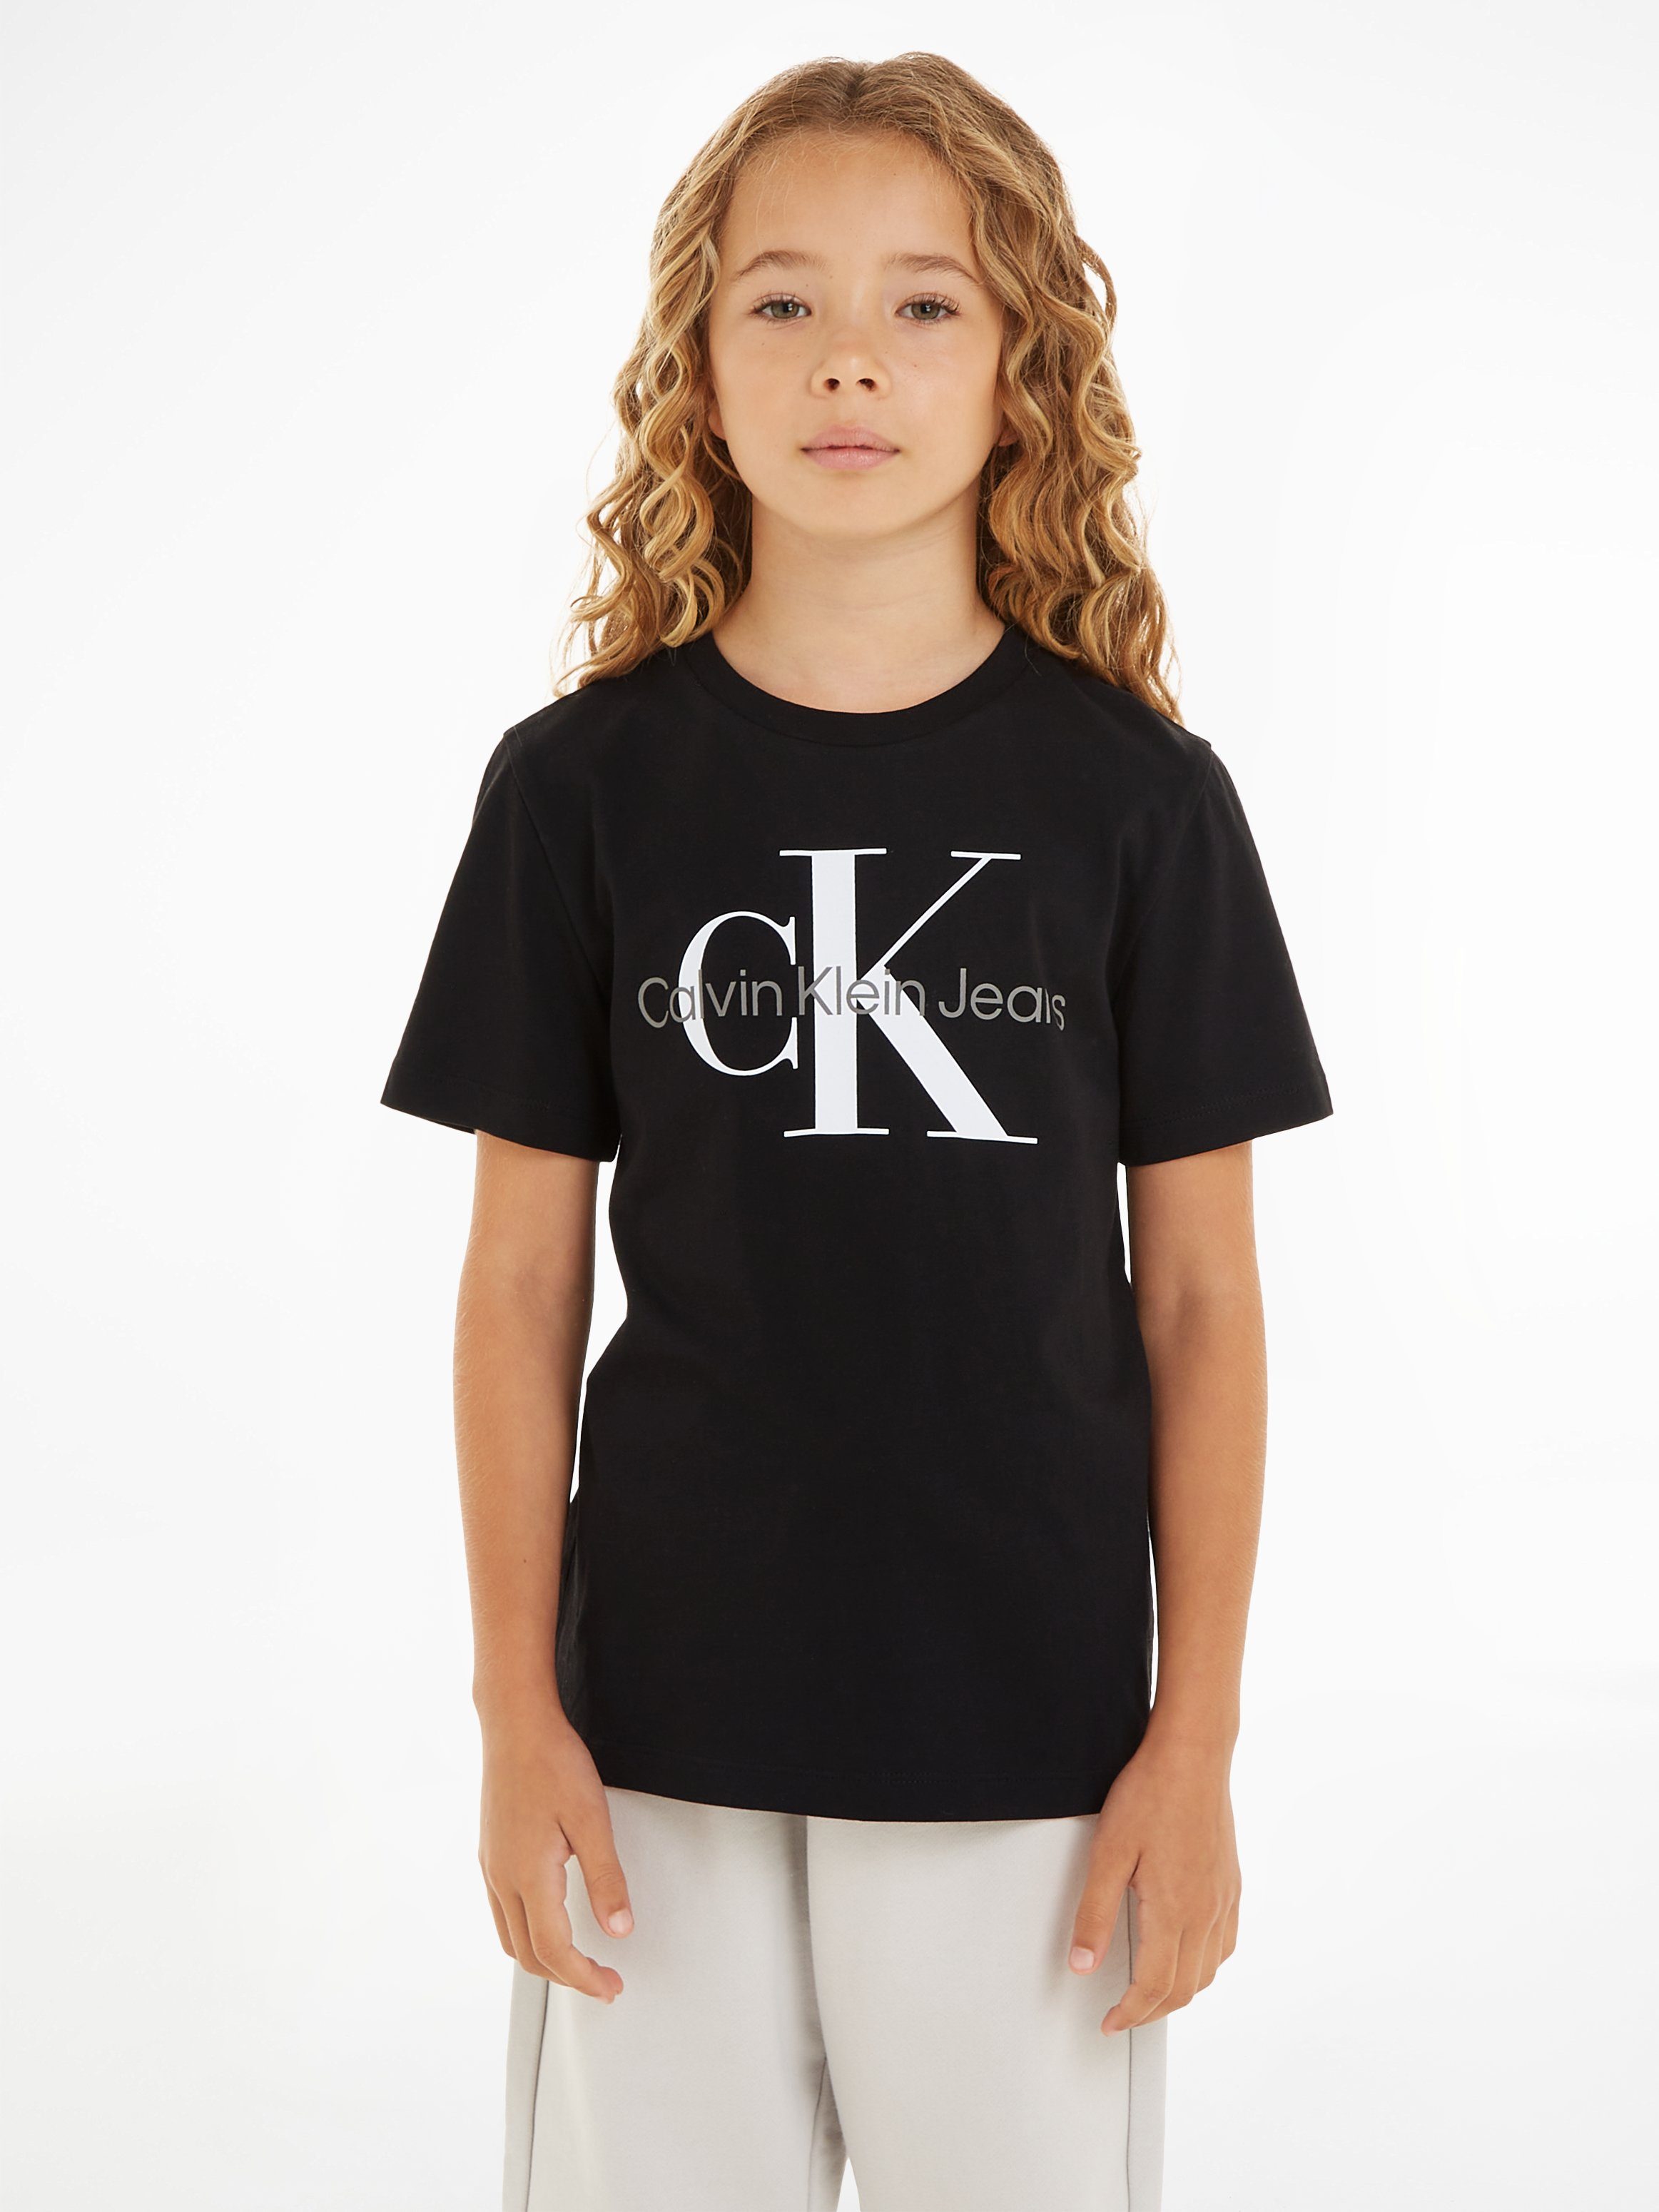 Calvin Klein Jeans Ck SS T-SHIRT Black CK MONOGRAM T-Shirt